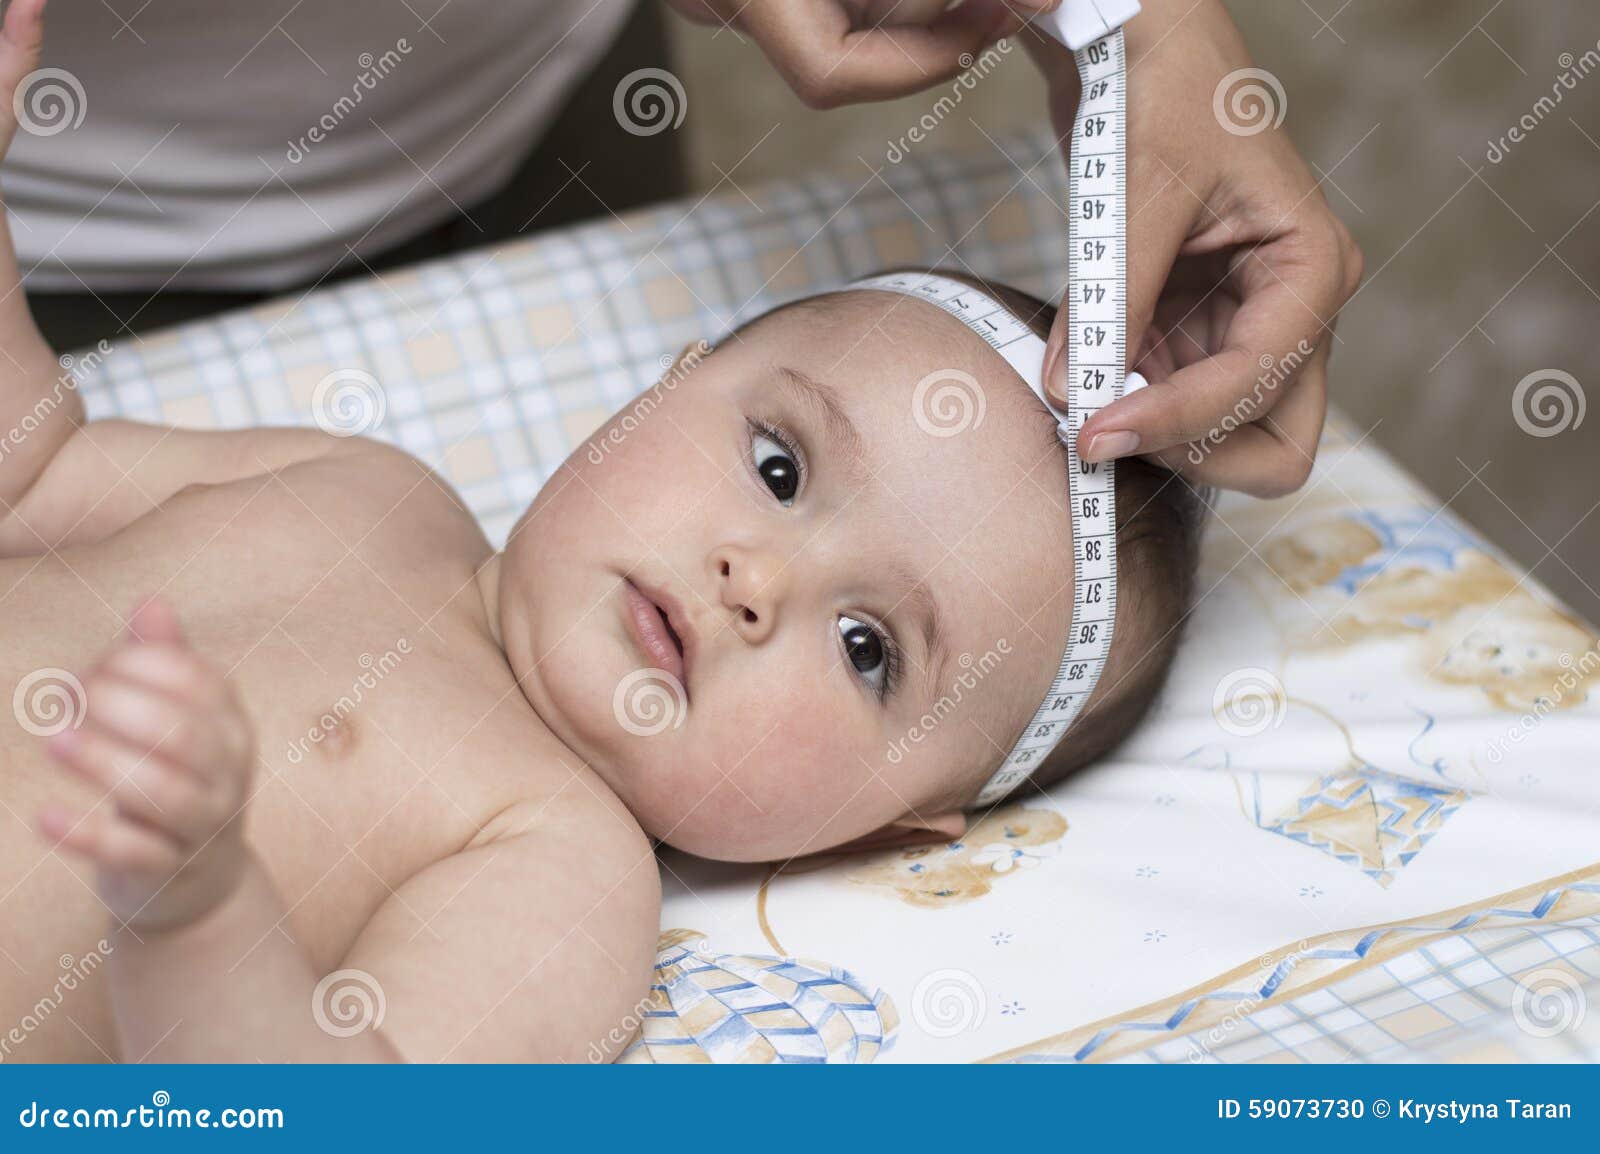 Маленькая окружность головы. Измерение головы новорожденного. Антропометрия новорожденного. Измерение окружности головы у новорожденных. Измерение окружности грудной клетки у детей.